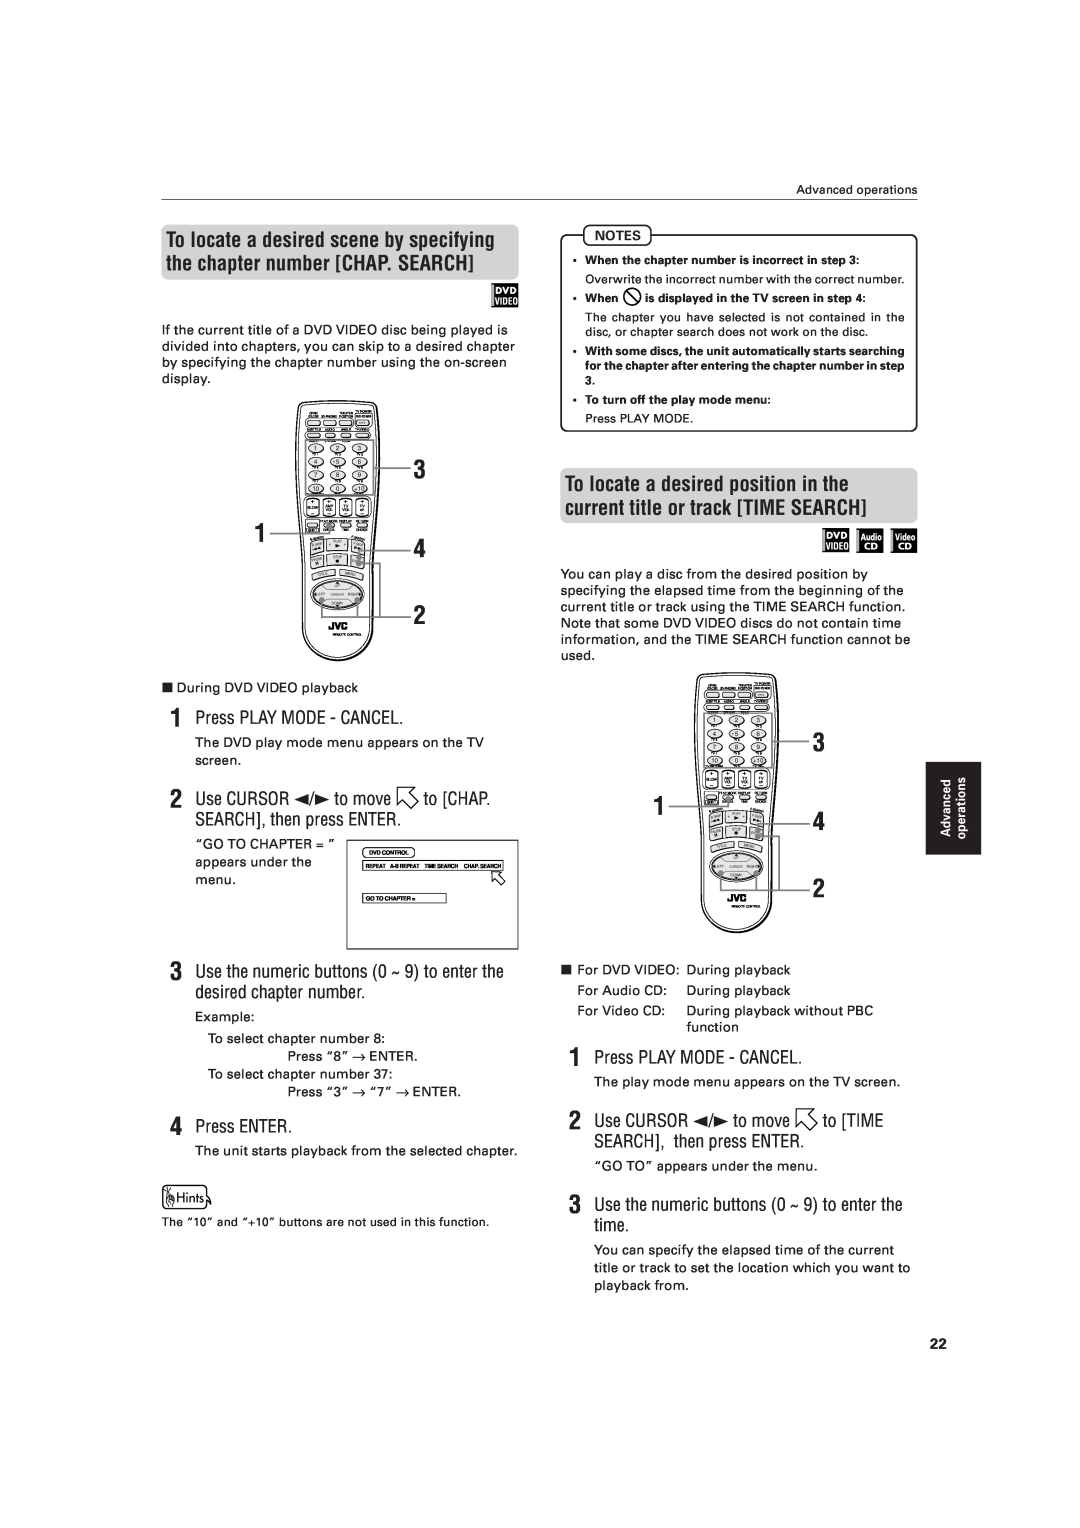 JVC XV-521BK manual Press PLAY MODE - CANCEL, Use CURSOR 2/3 to move to CHAP. SEARCH, then press ENTER, Press ENTER 